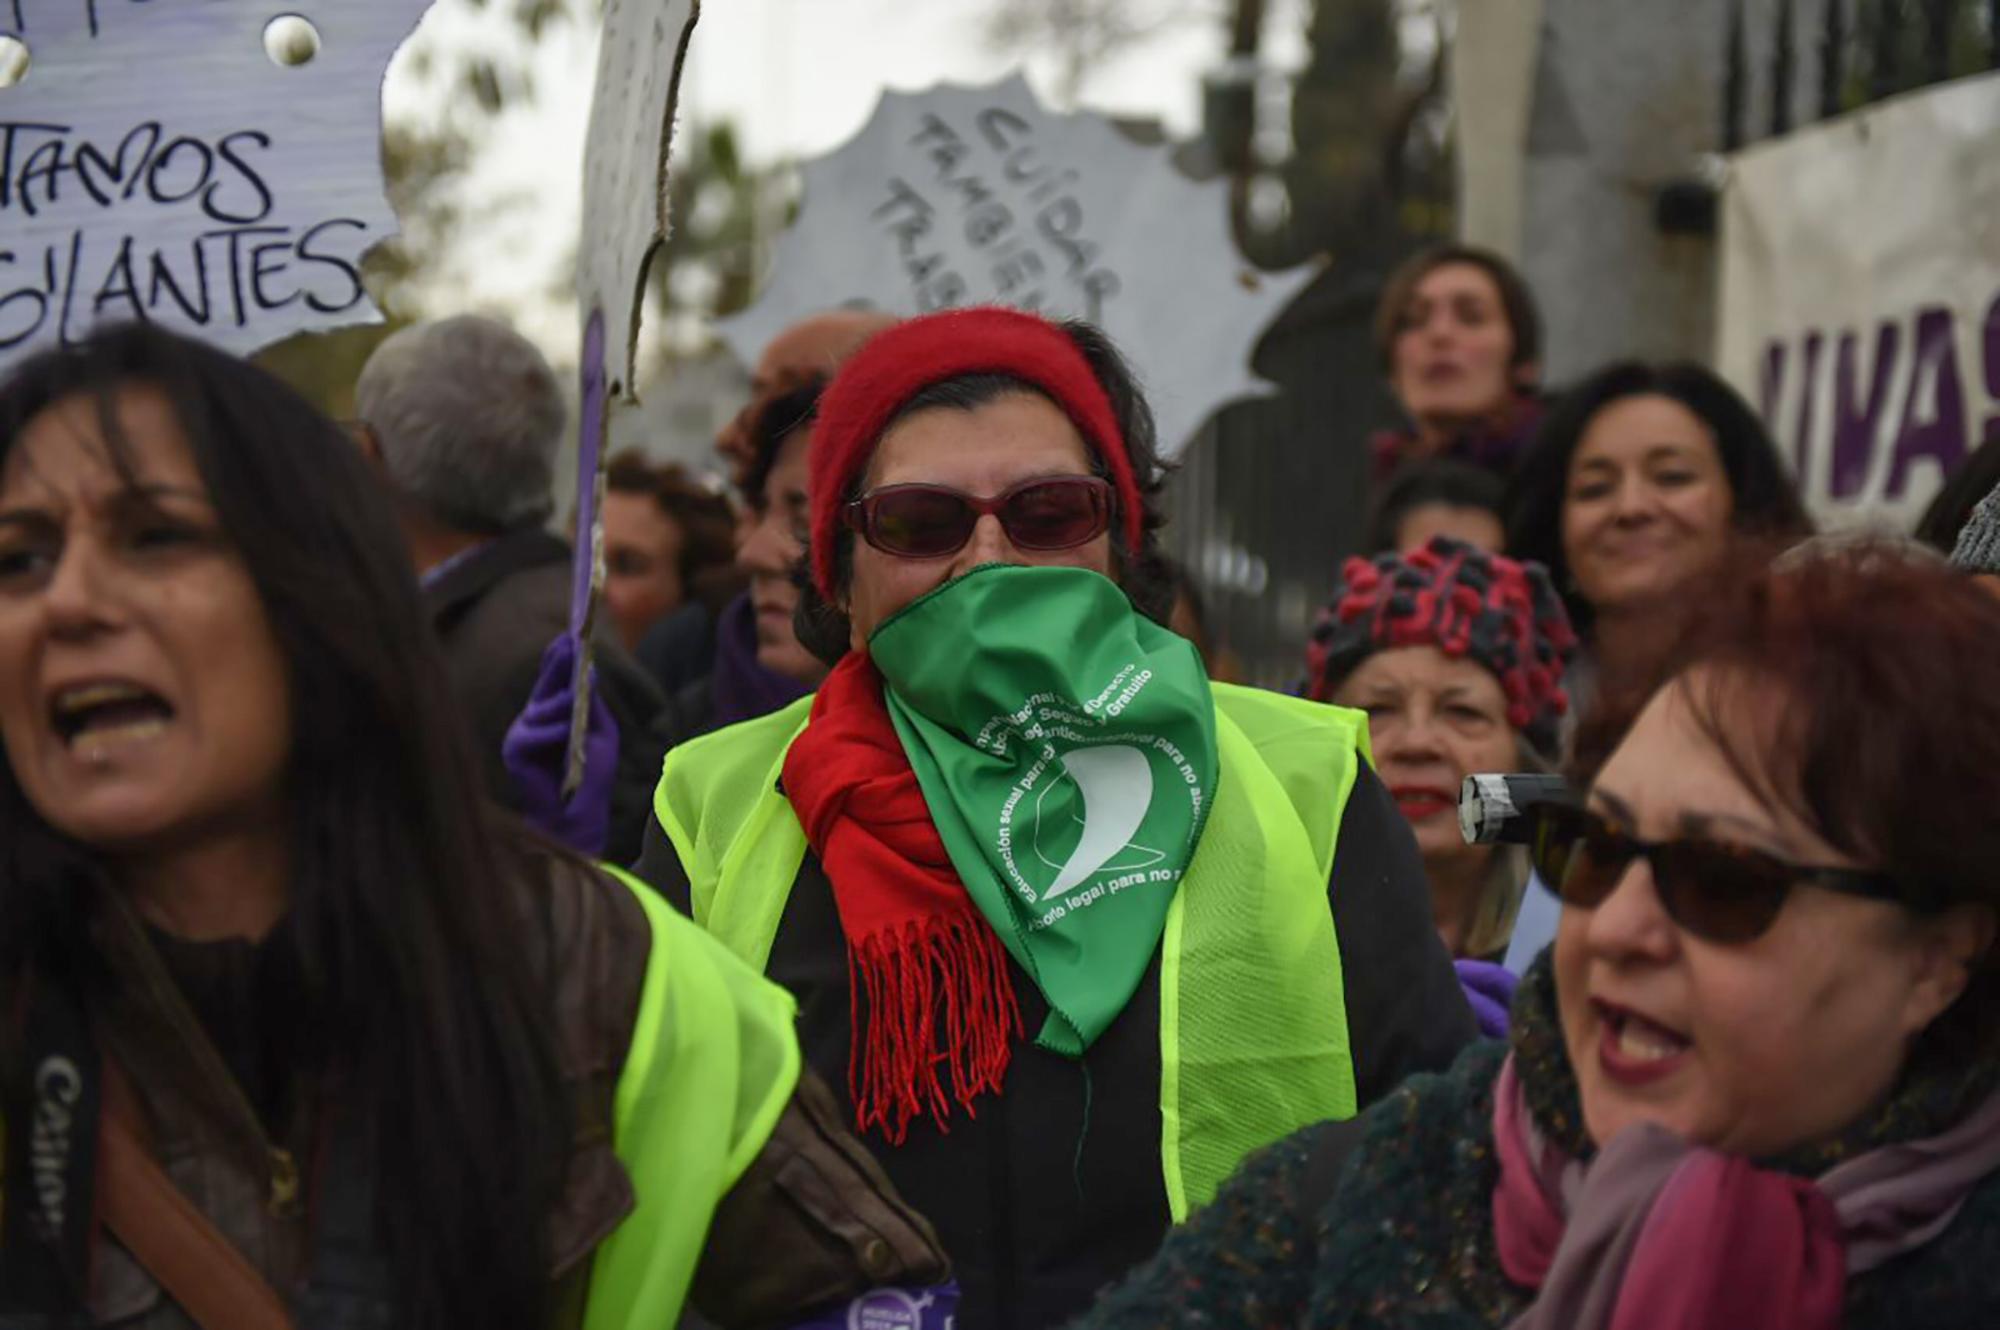 Concentracion feminista en el Parlamento andaluz 3